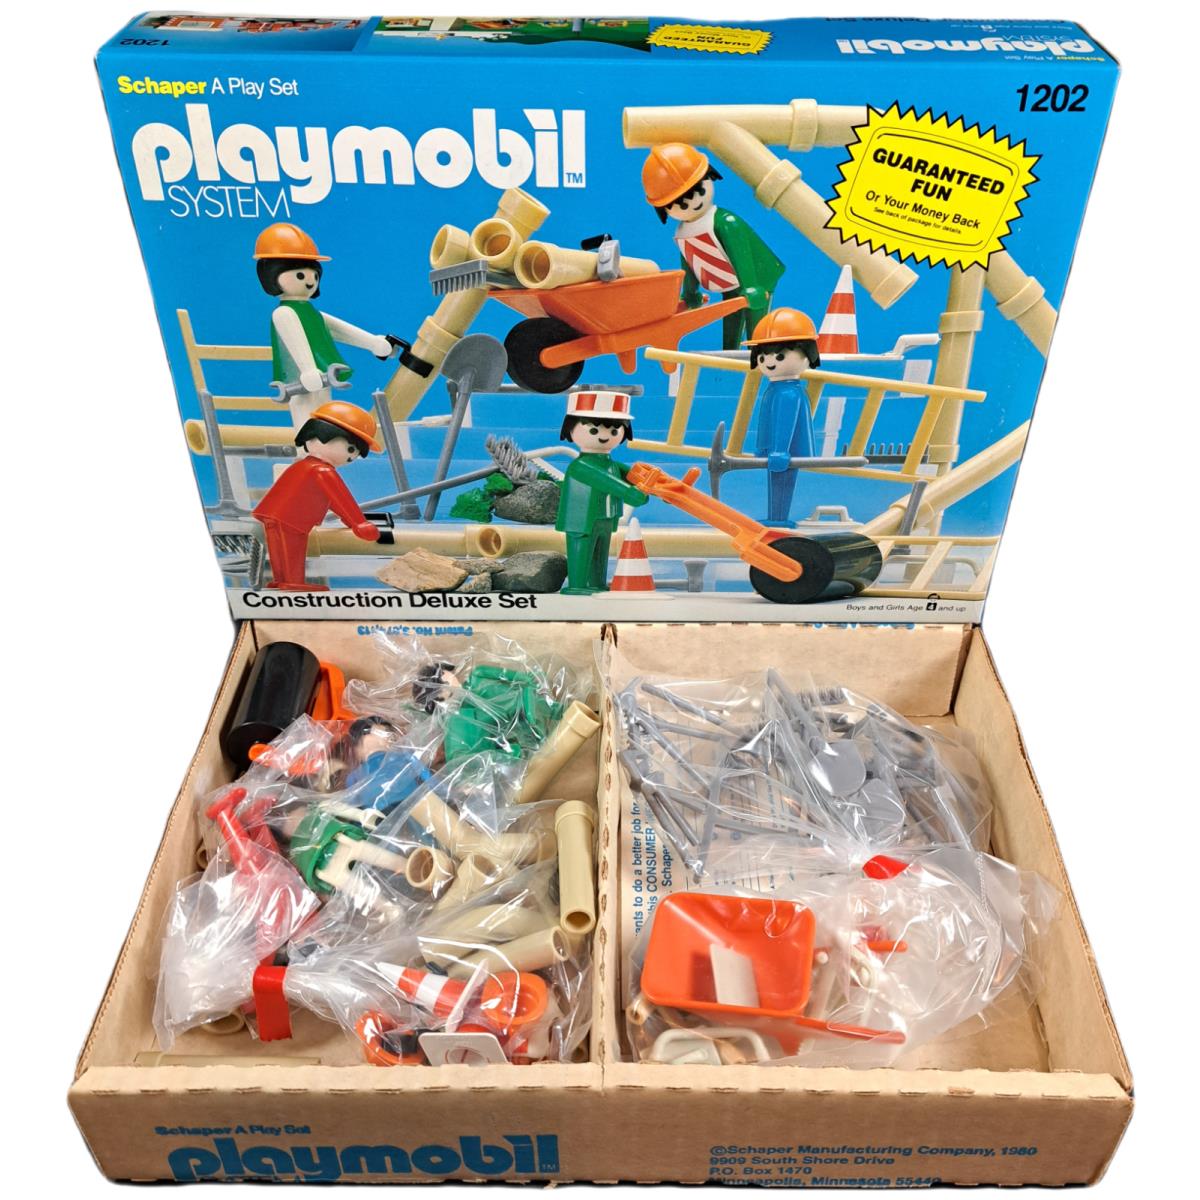 Vintage 80s Toy Playmobil 1202 Construction Deluxe Set Schaper c1980